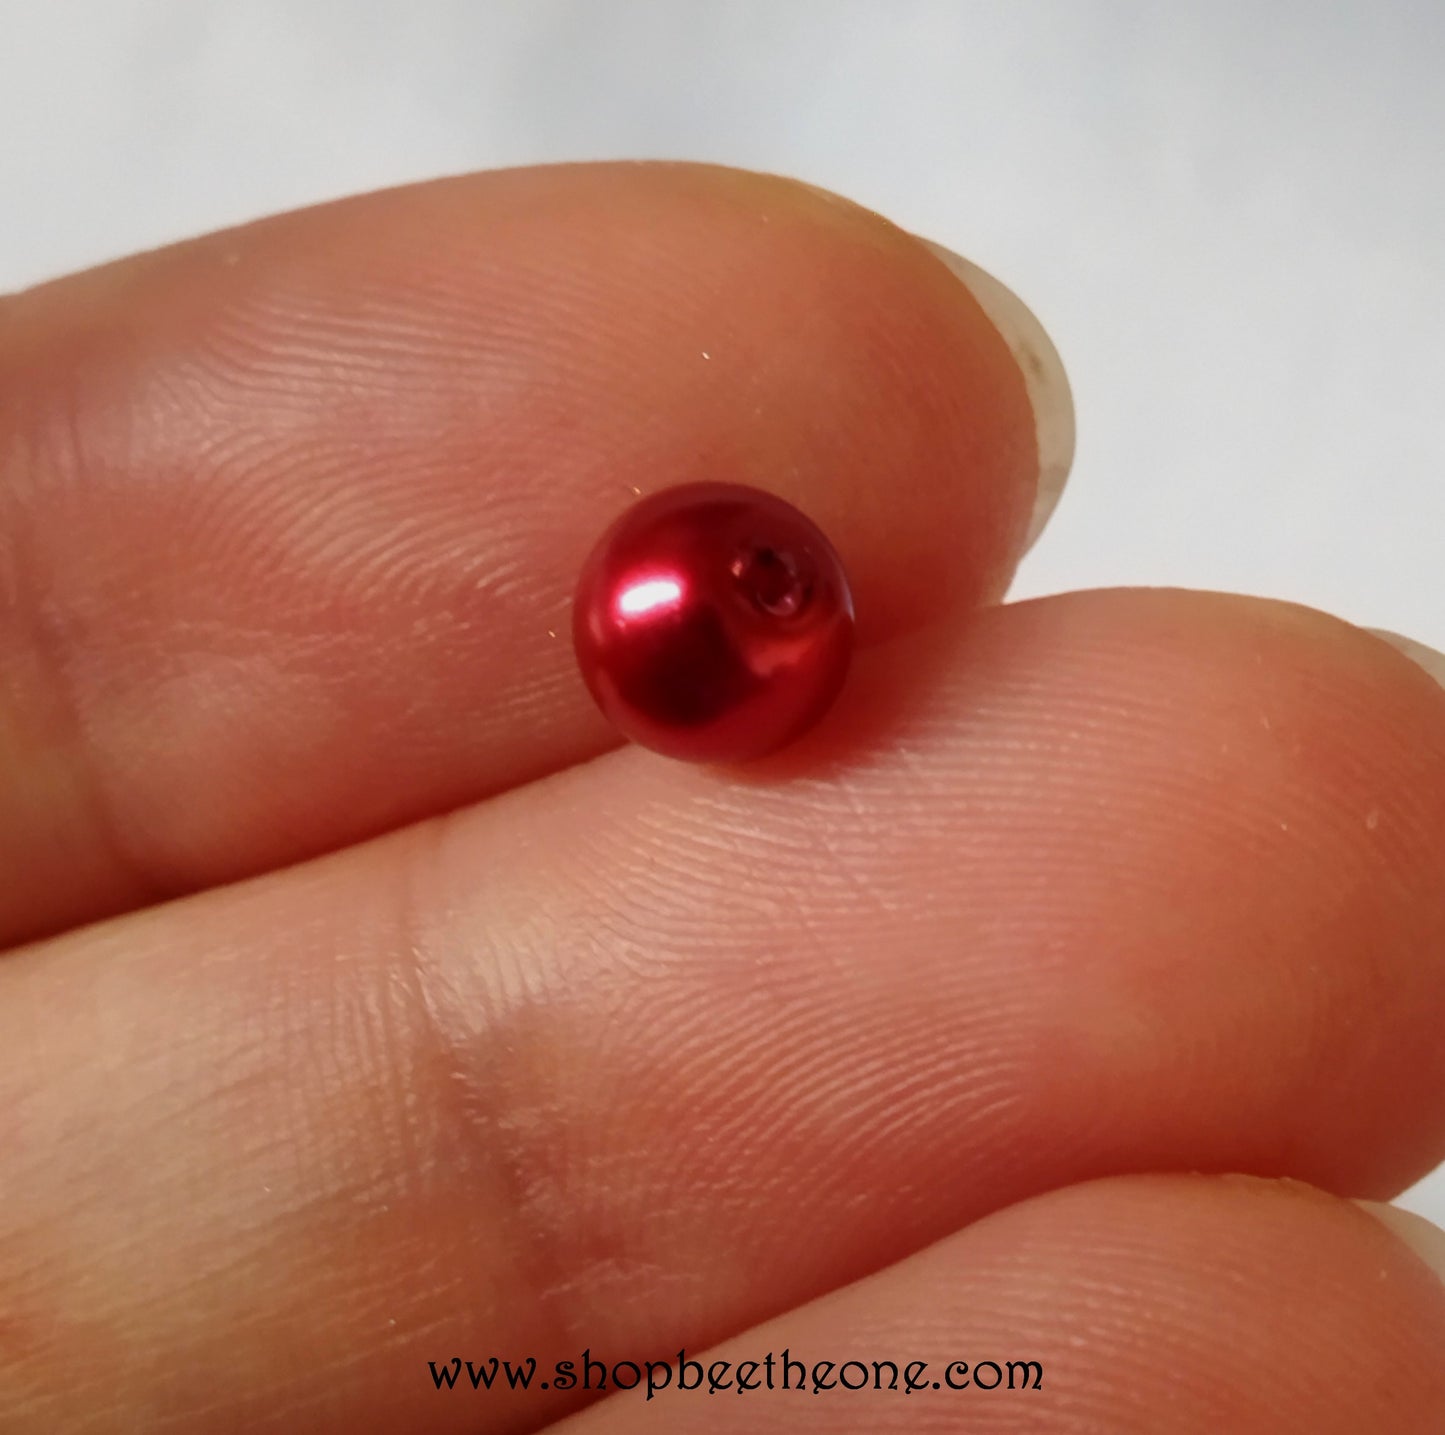 Perle ronde en plastique - 5-6 mm - rouge foncé